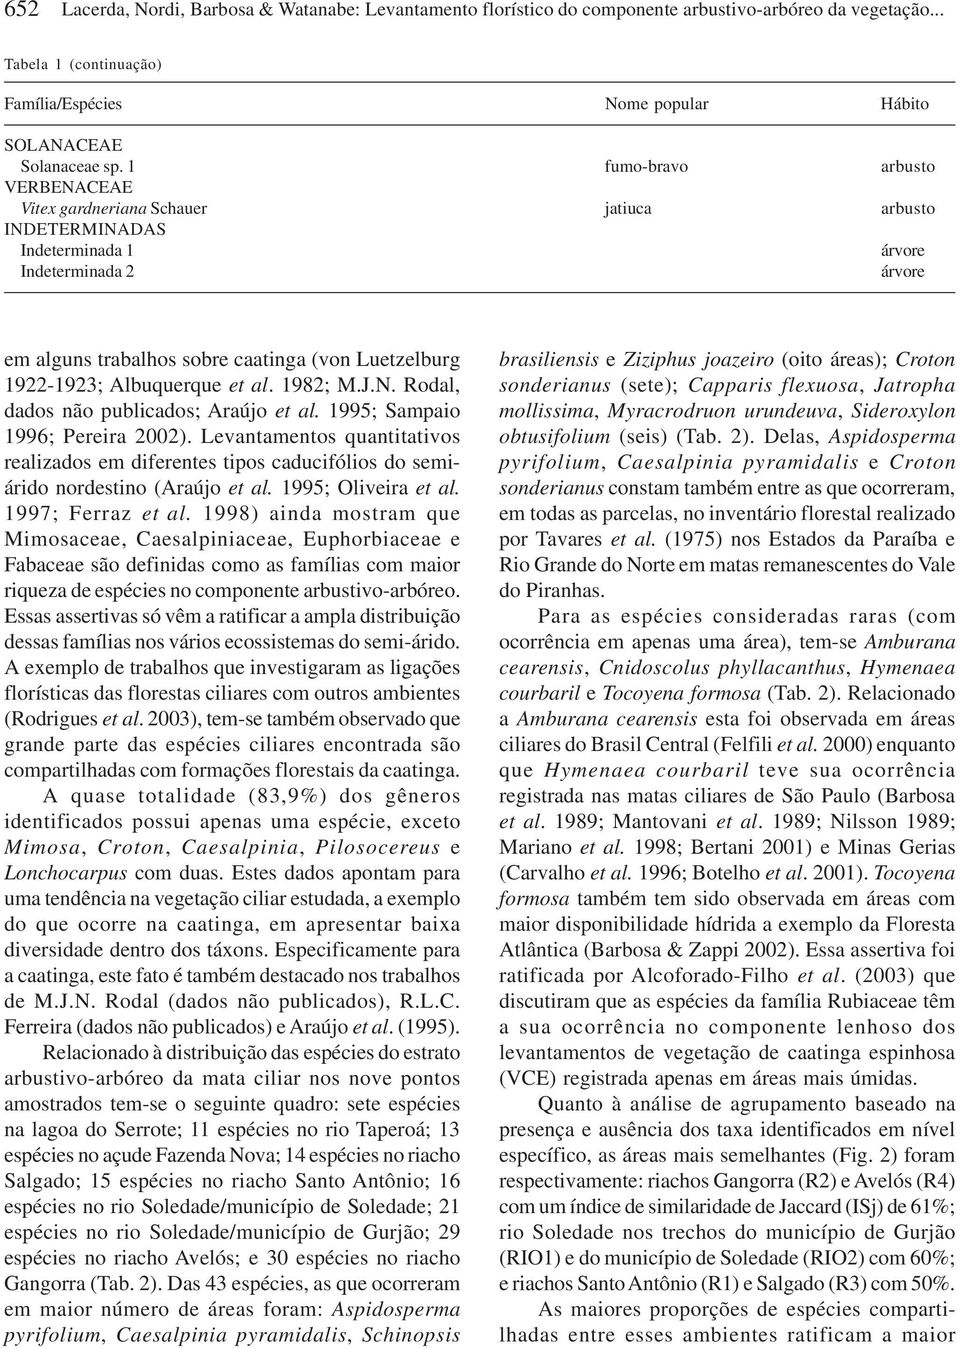 Albuquerque et al. 1982; M.J.N. Rodal, dados não publicados; Araújo et al. 1995; Sampaio 1996; Pereira 2002).